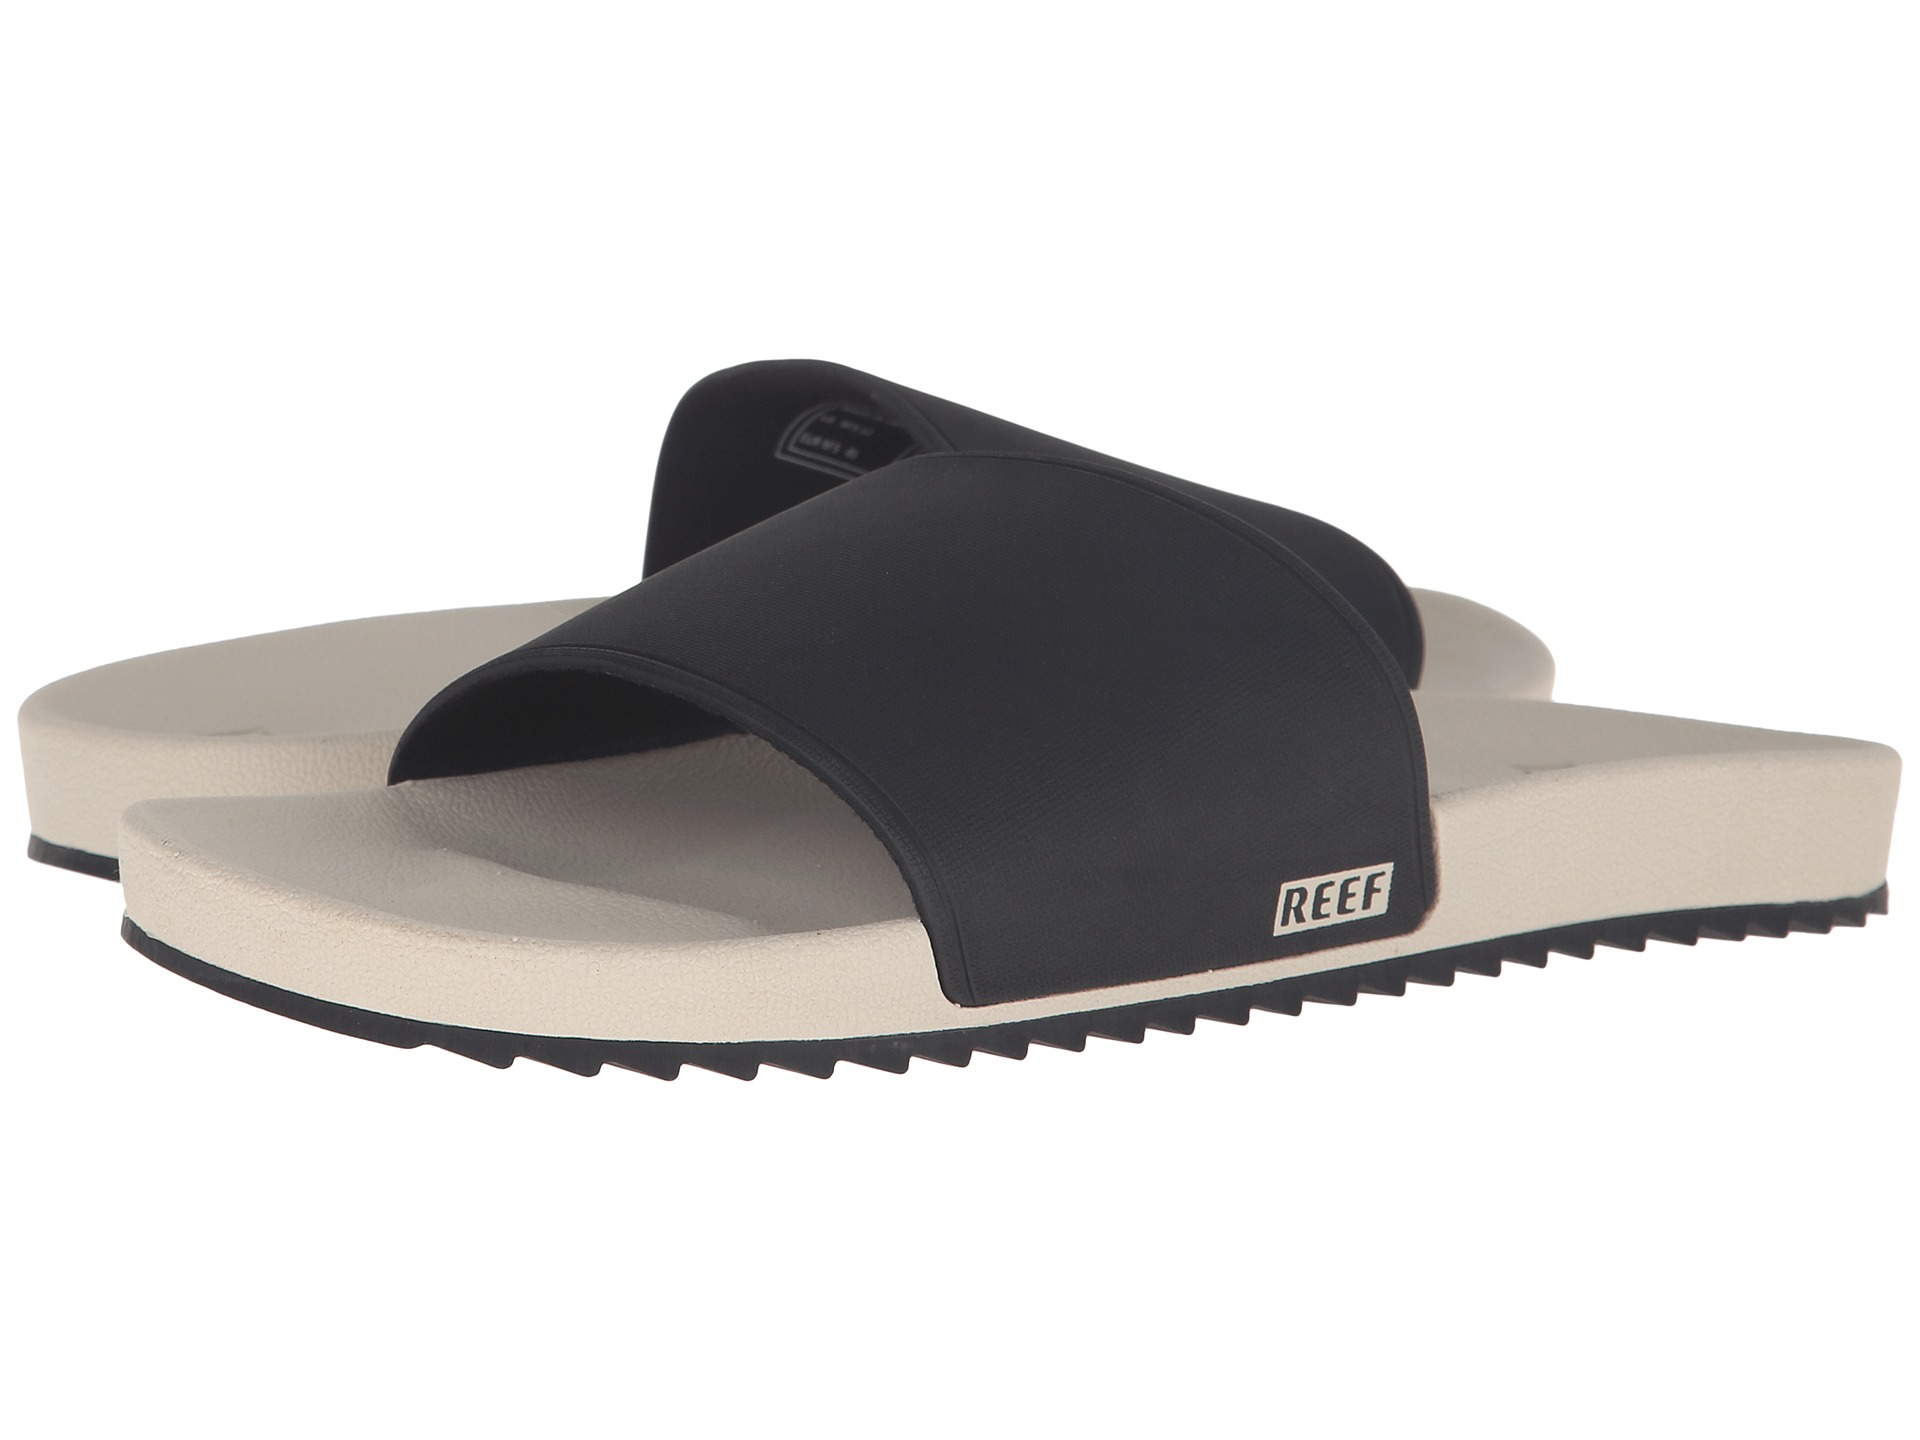 reef slidely sandals